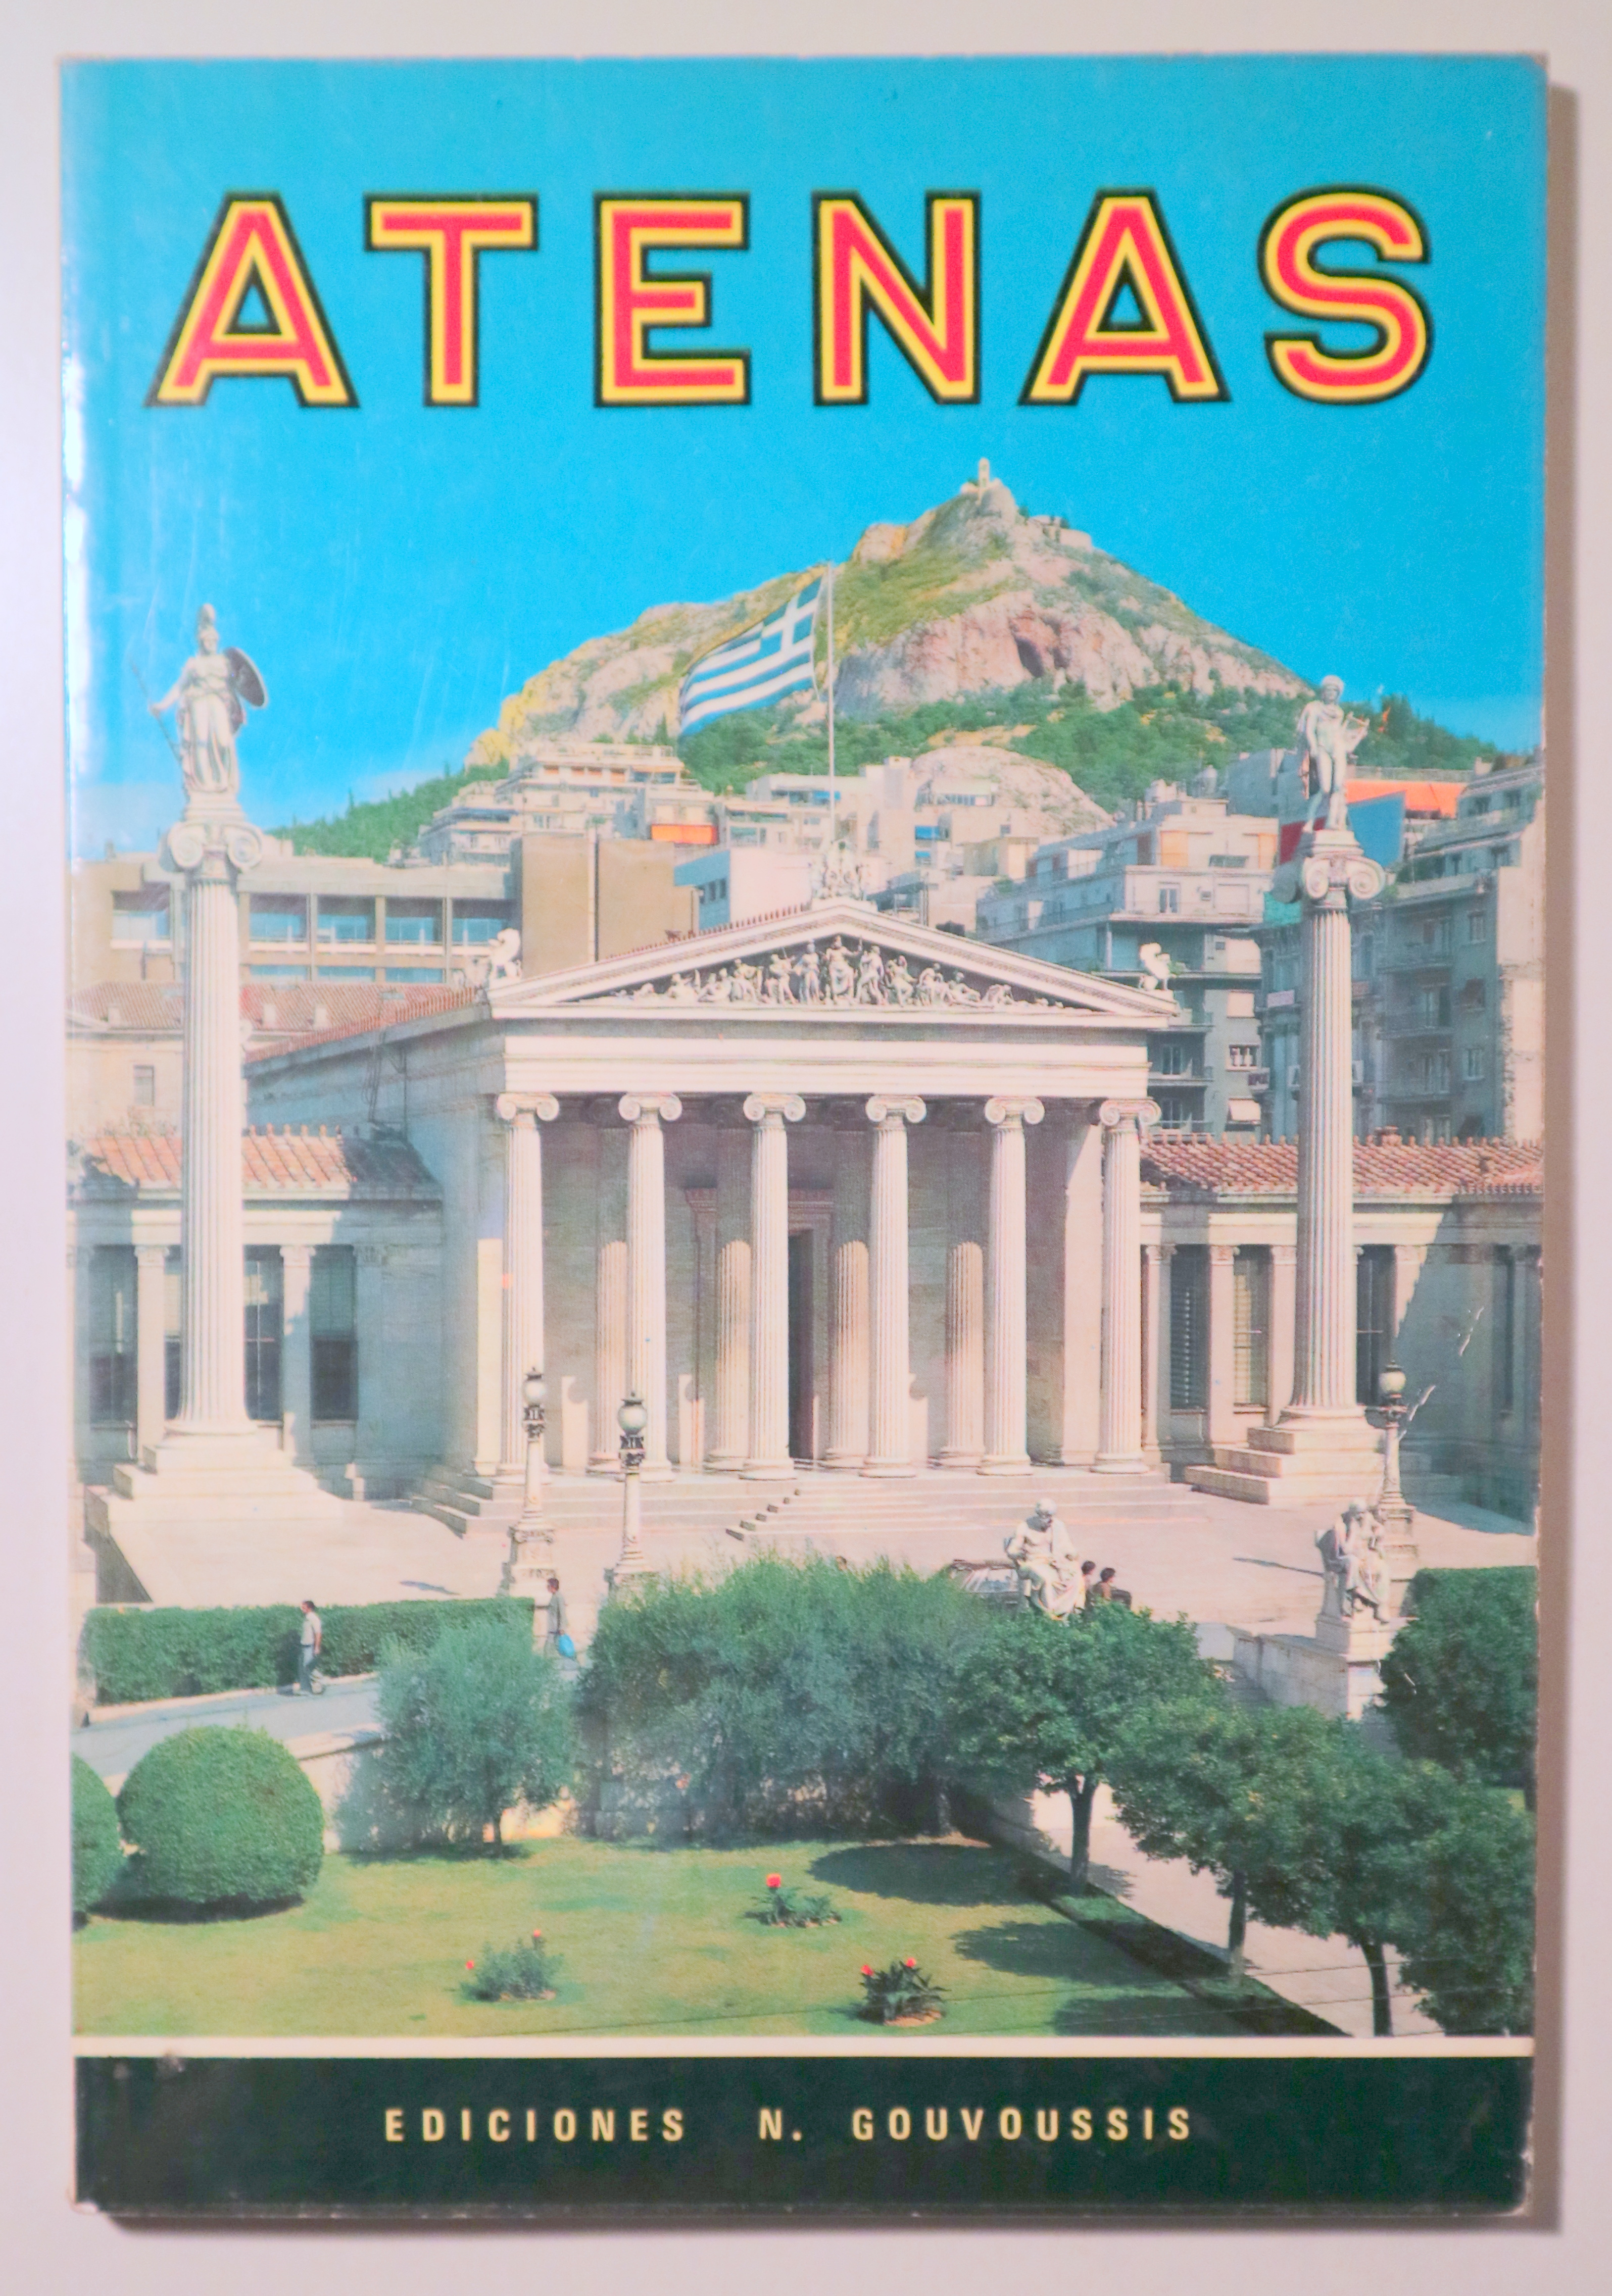 ATENAS - Atenas 1978 - Ilustrado